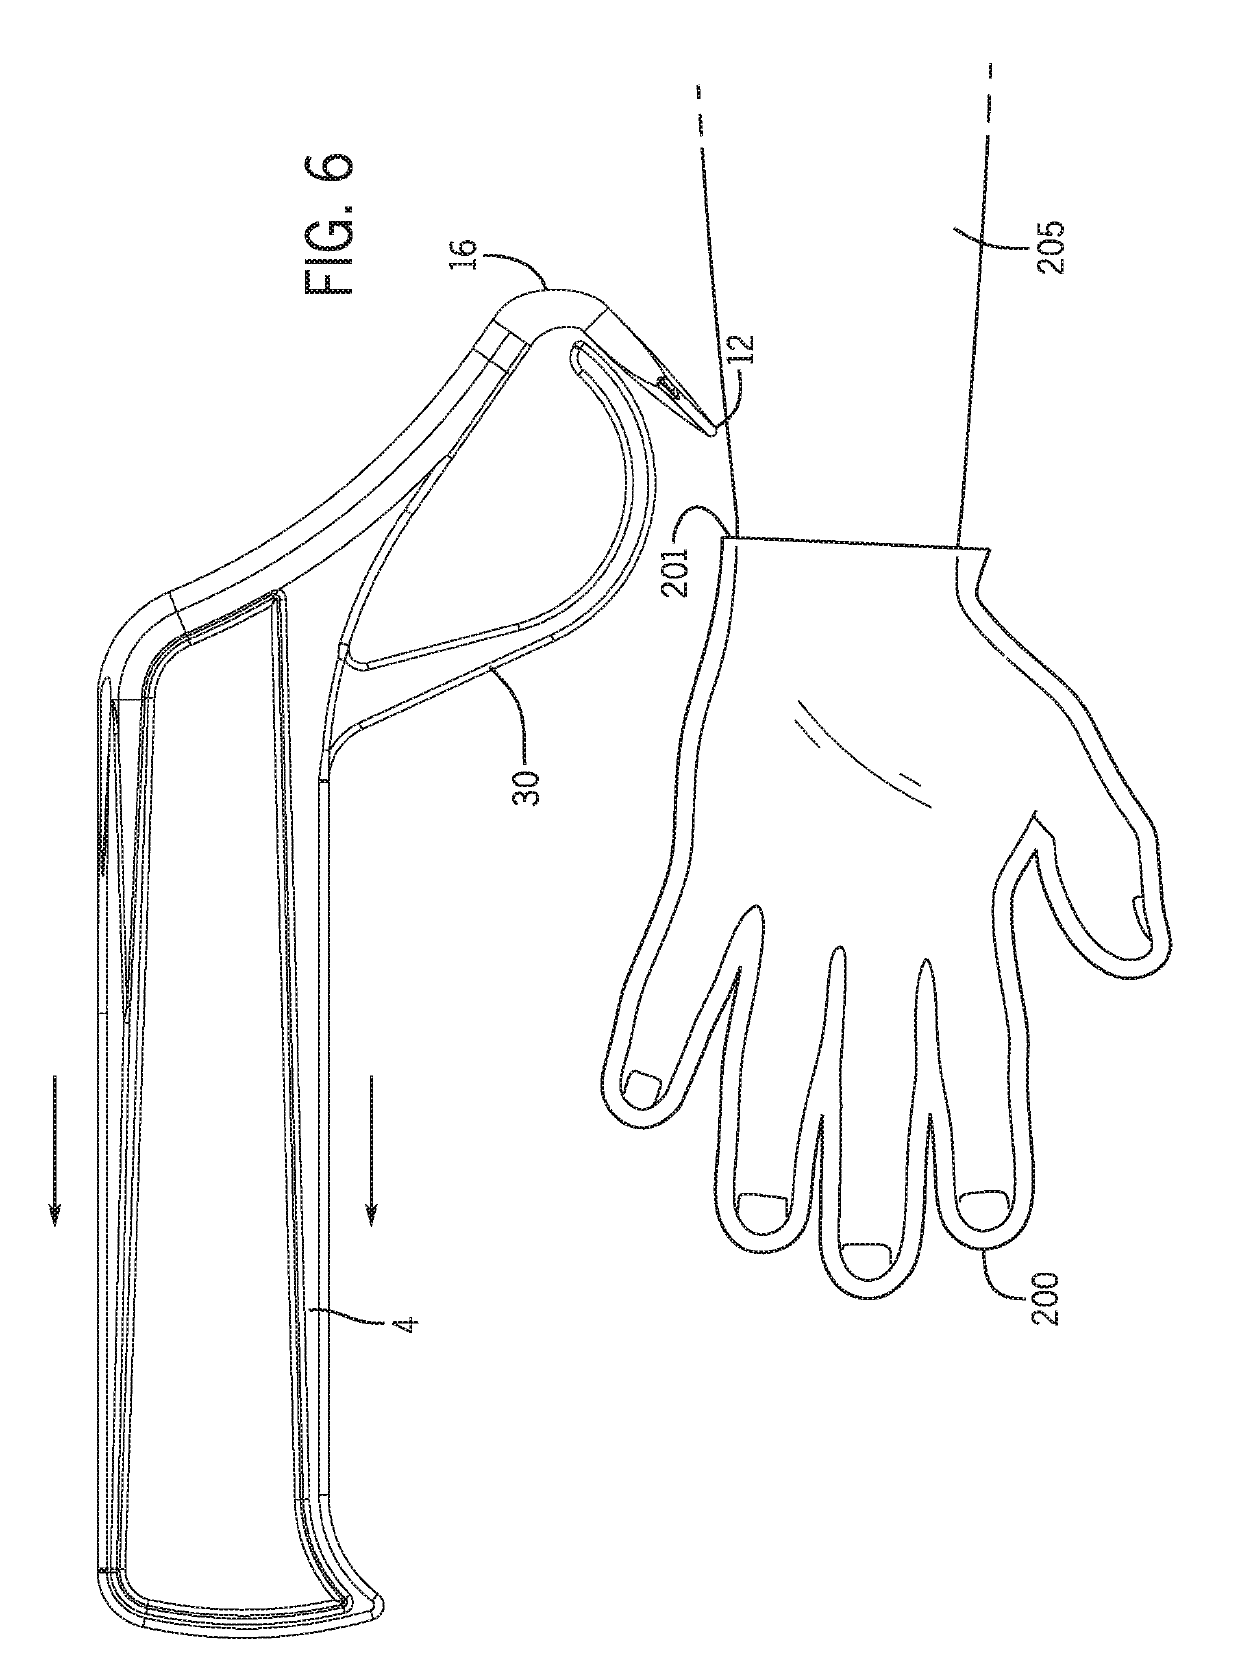 Glove remover apparatus